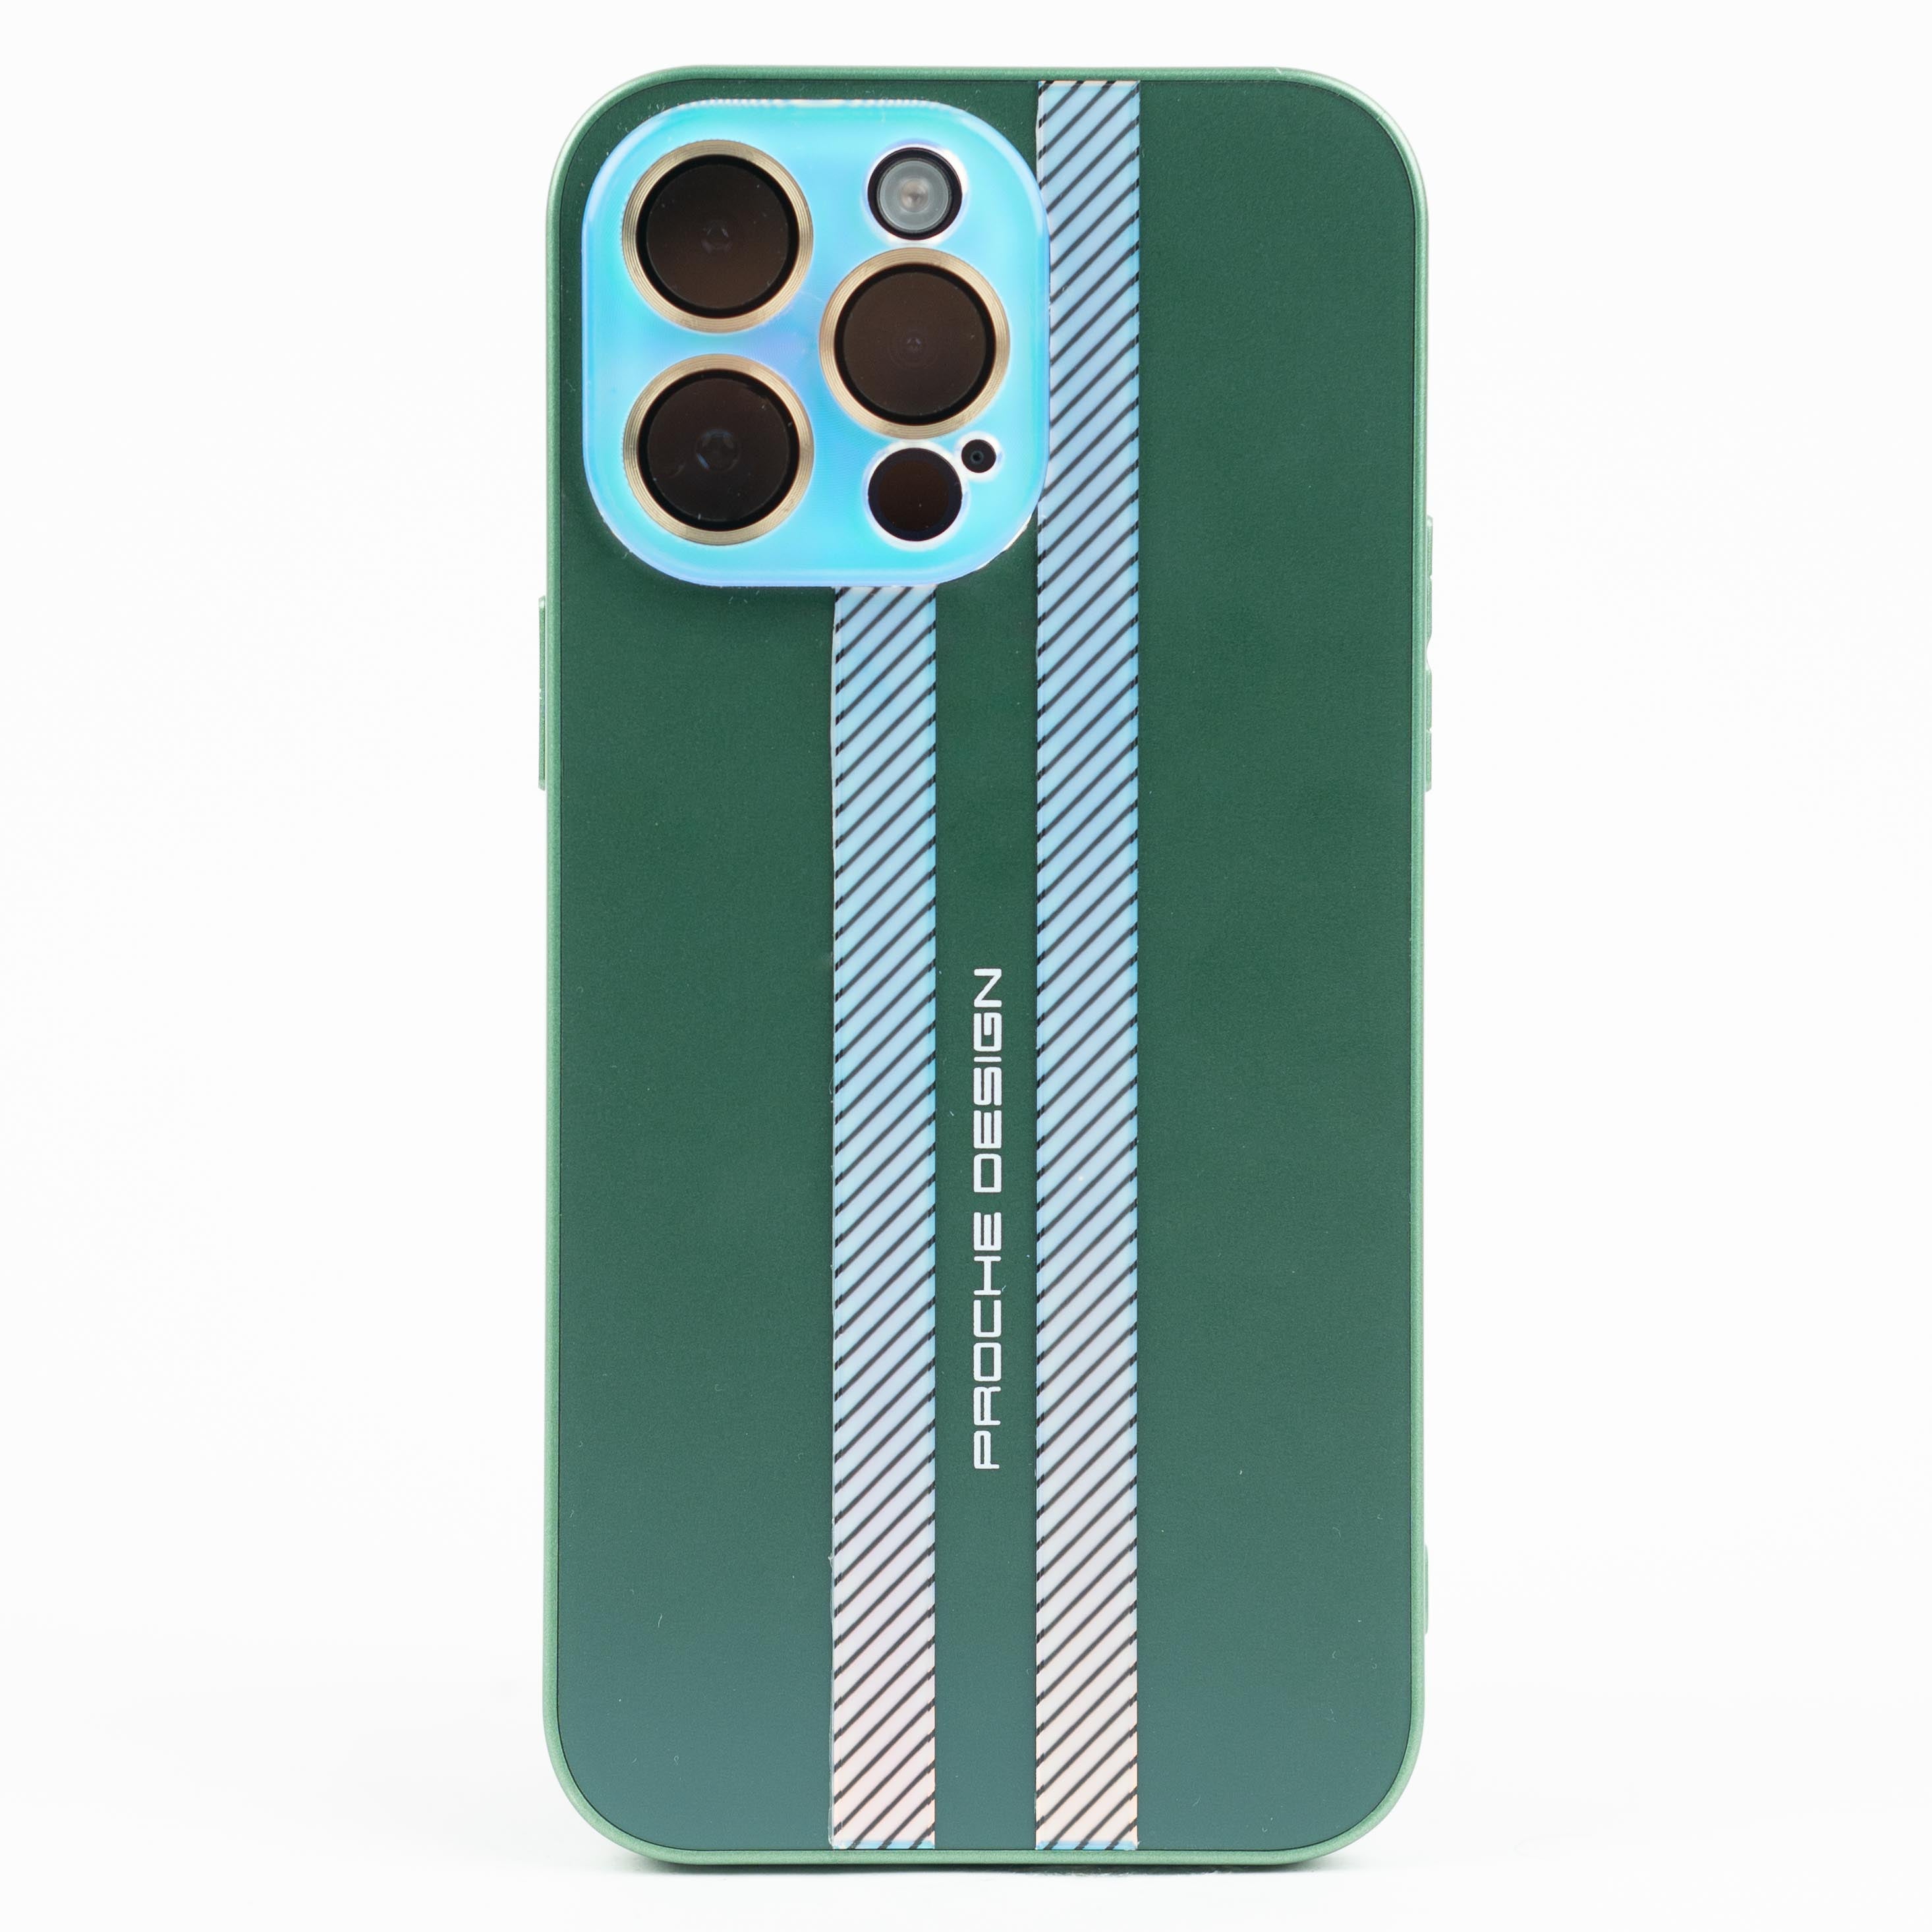 جراب بروش لهاتف iPhone 11 Pro Max، مصنوع من مواد بلاستيكية عالية الجودة